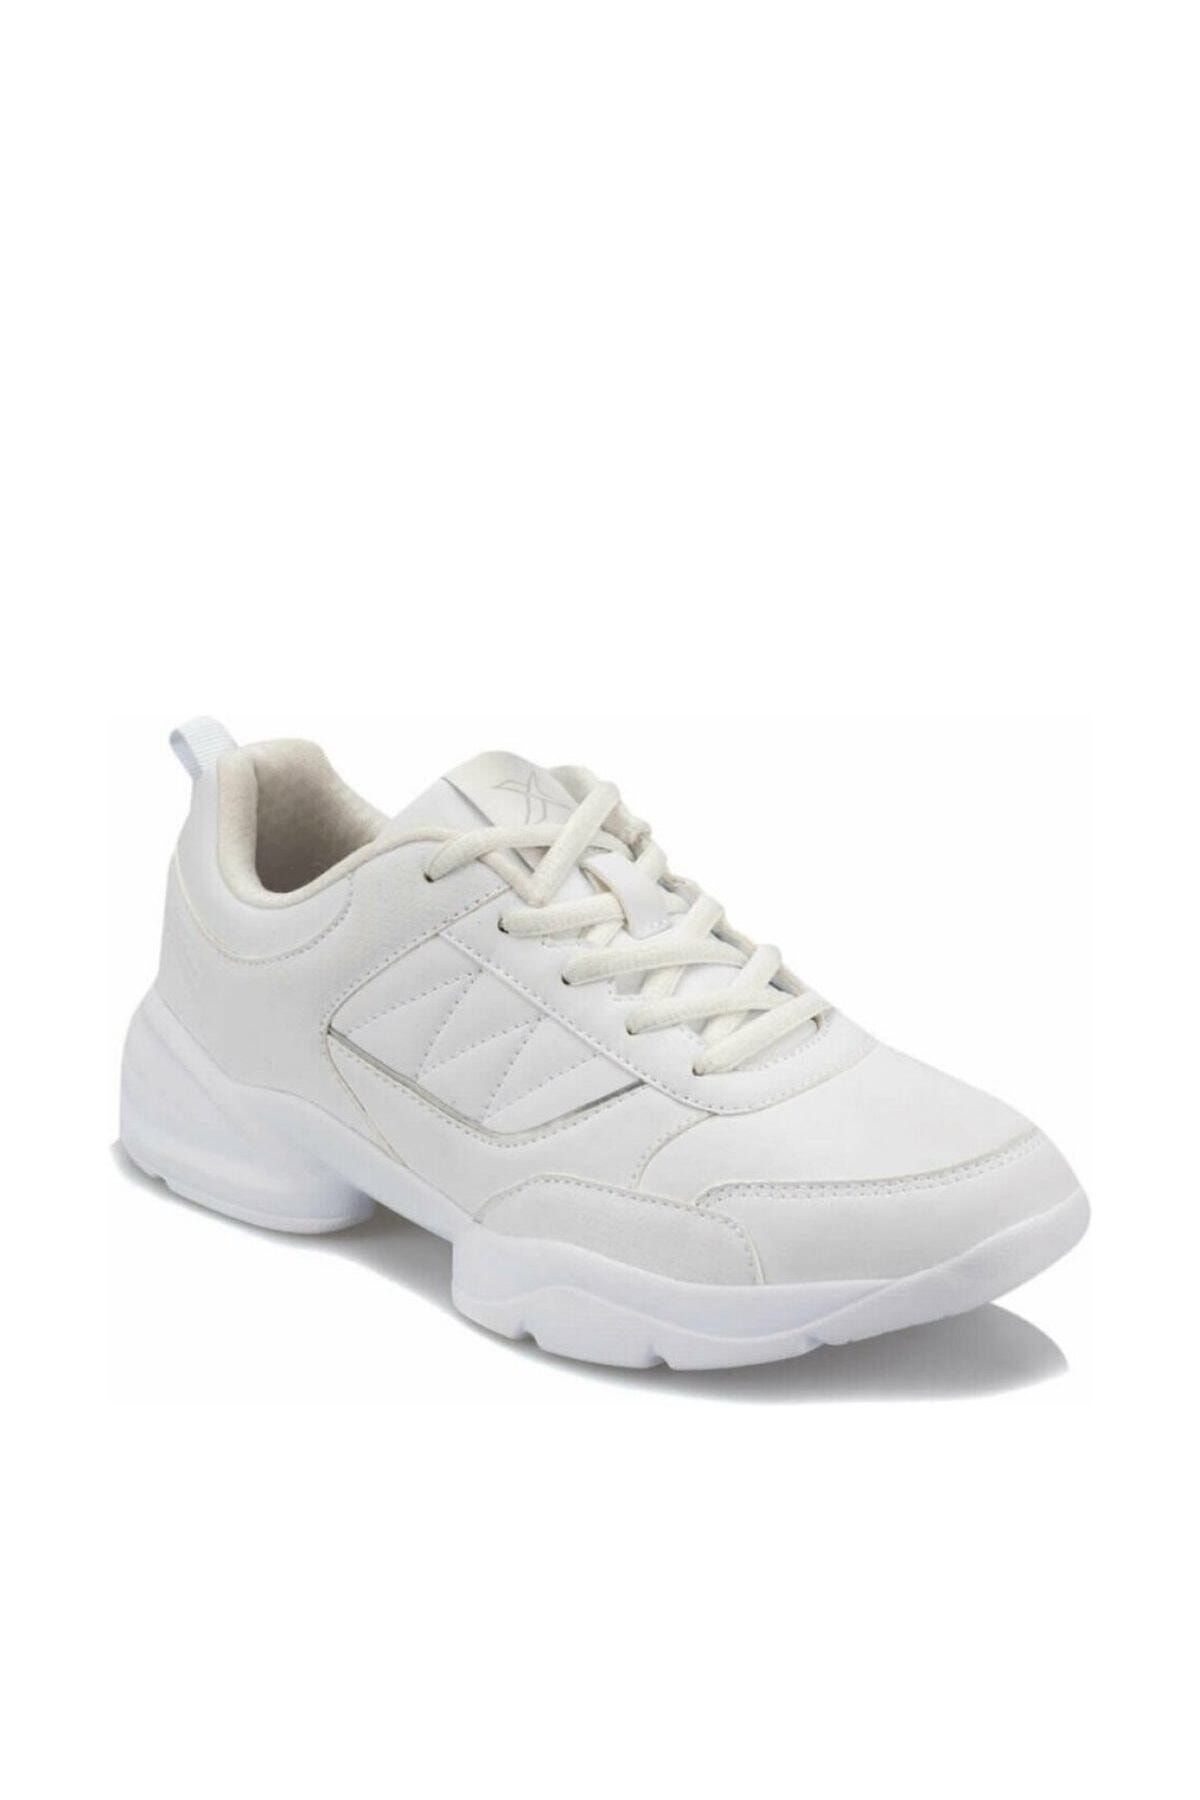 Kinetix PERLA W 9PR Beyaz Kadın Kalın Taban Sneaker Spor Ayakkabı 100426870